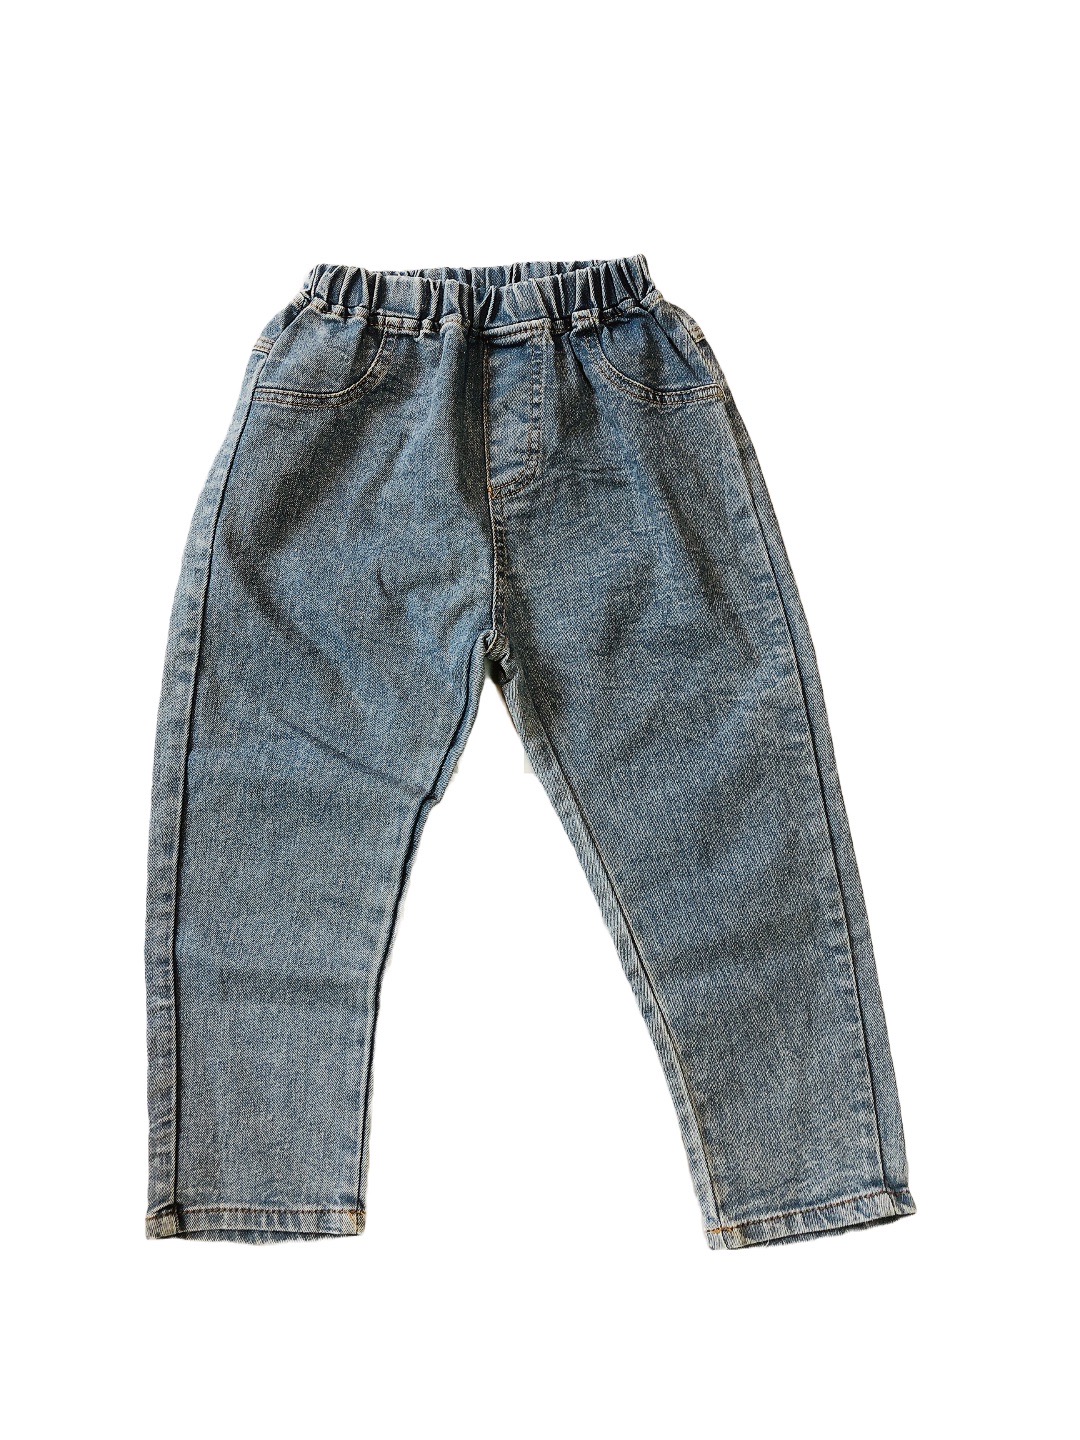 淺藍寬版薄兒童牛仔褲(13) NT$79